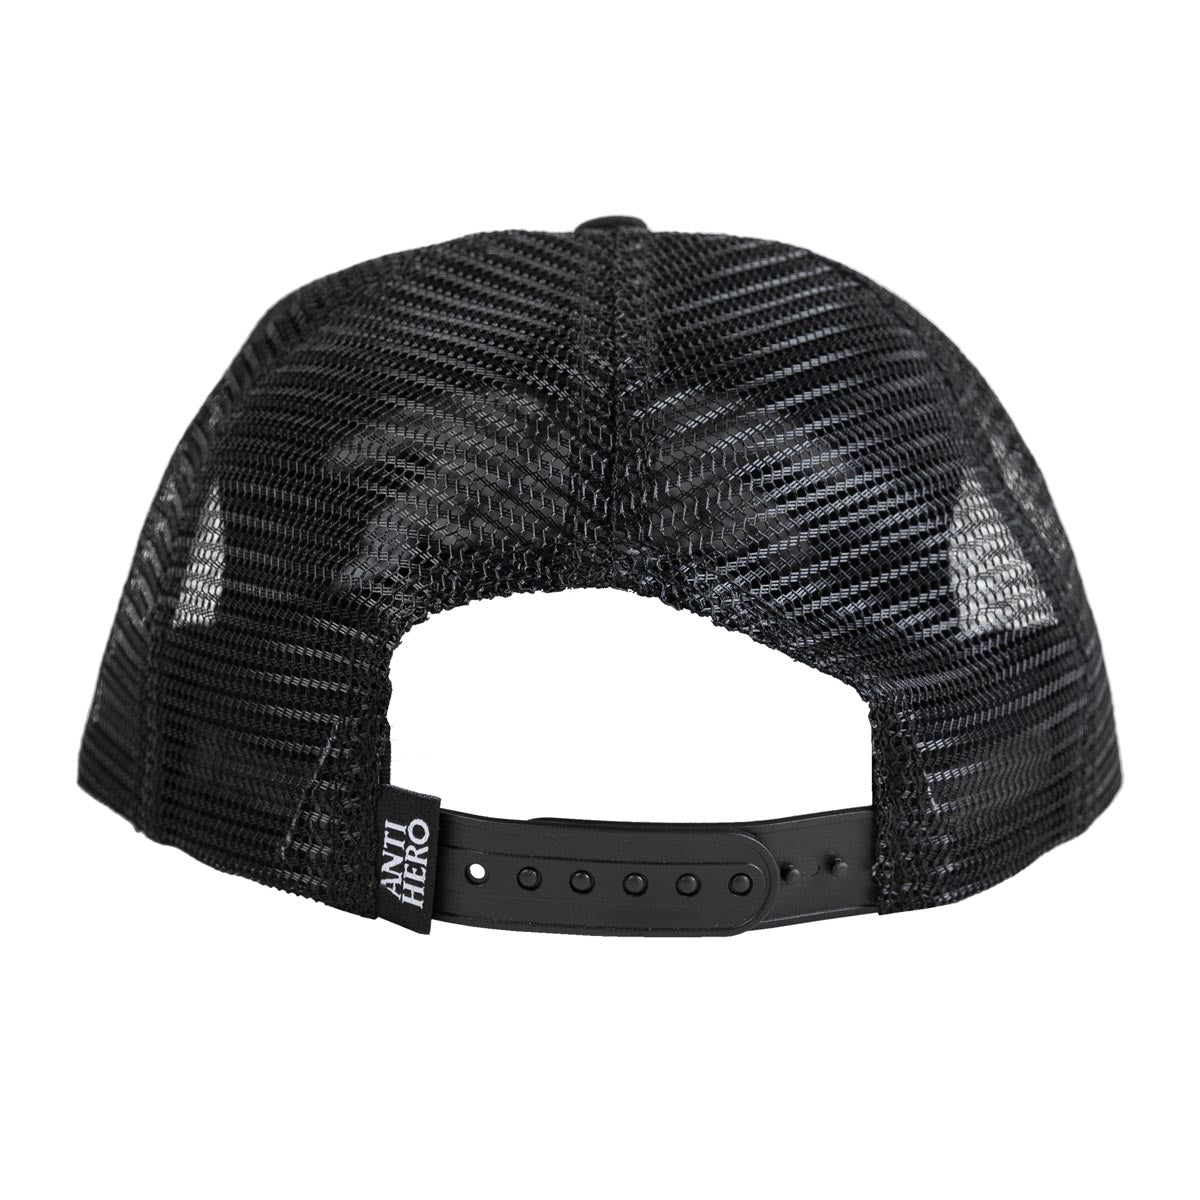 Anti-Hero Basic Eagle Snapback Hat - Black/Charcoal image 2